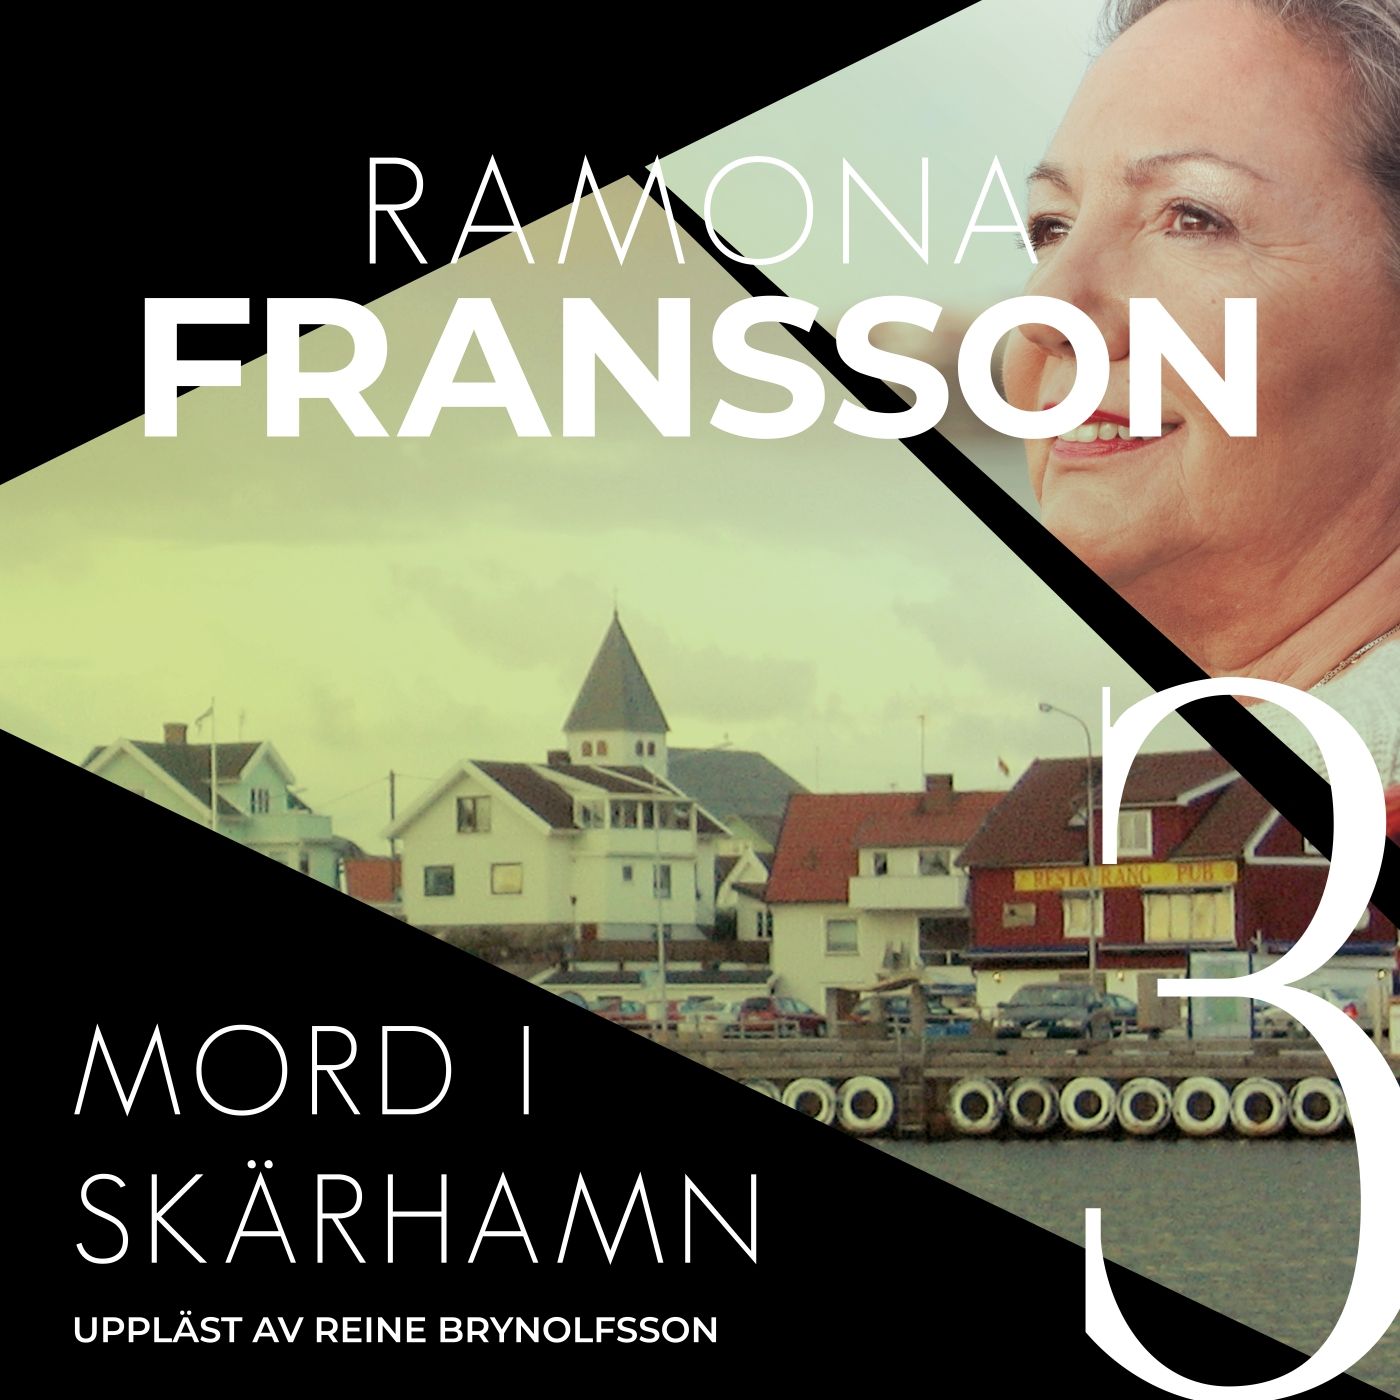 Mord i Skärhamn, ljudbok av Ramona Fransson